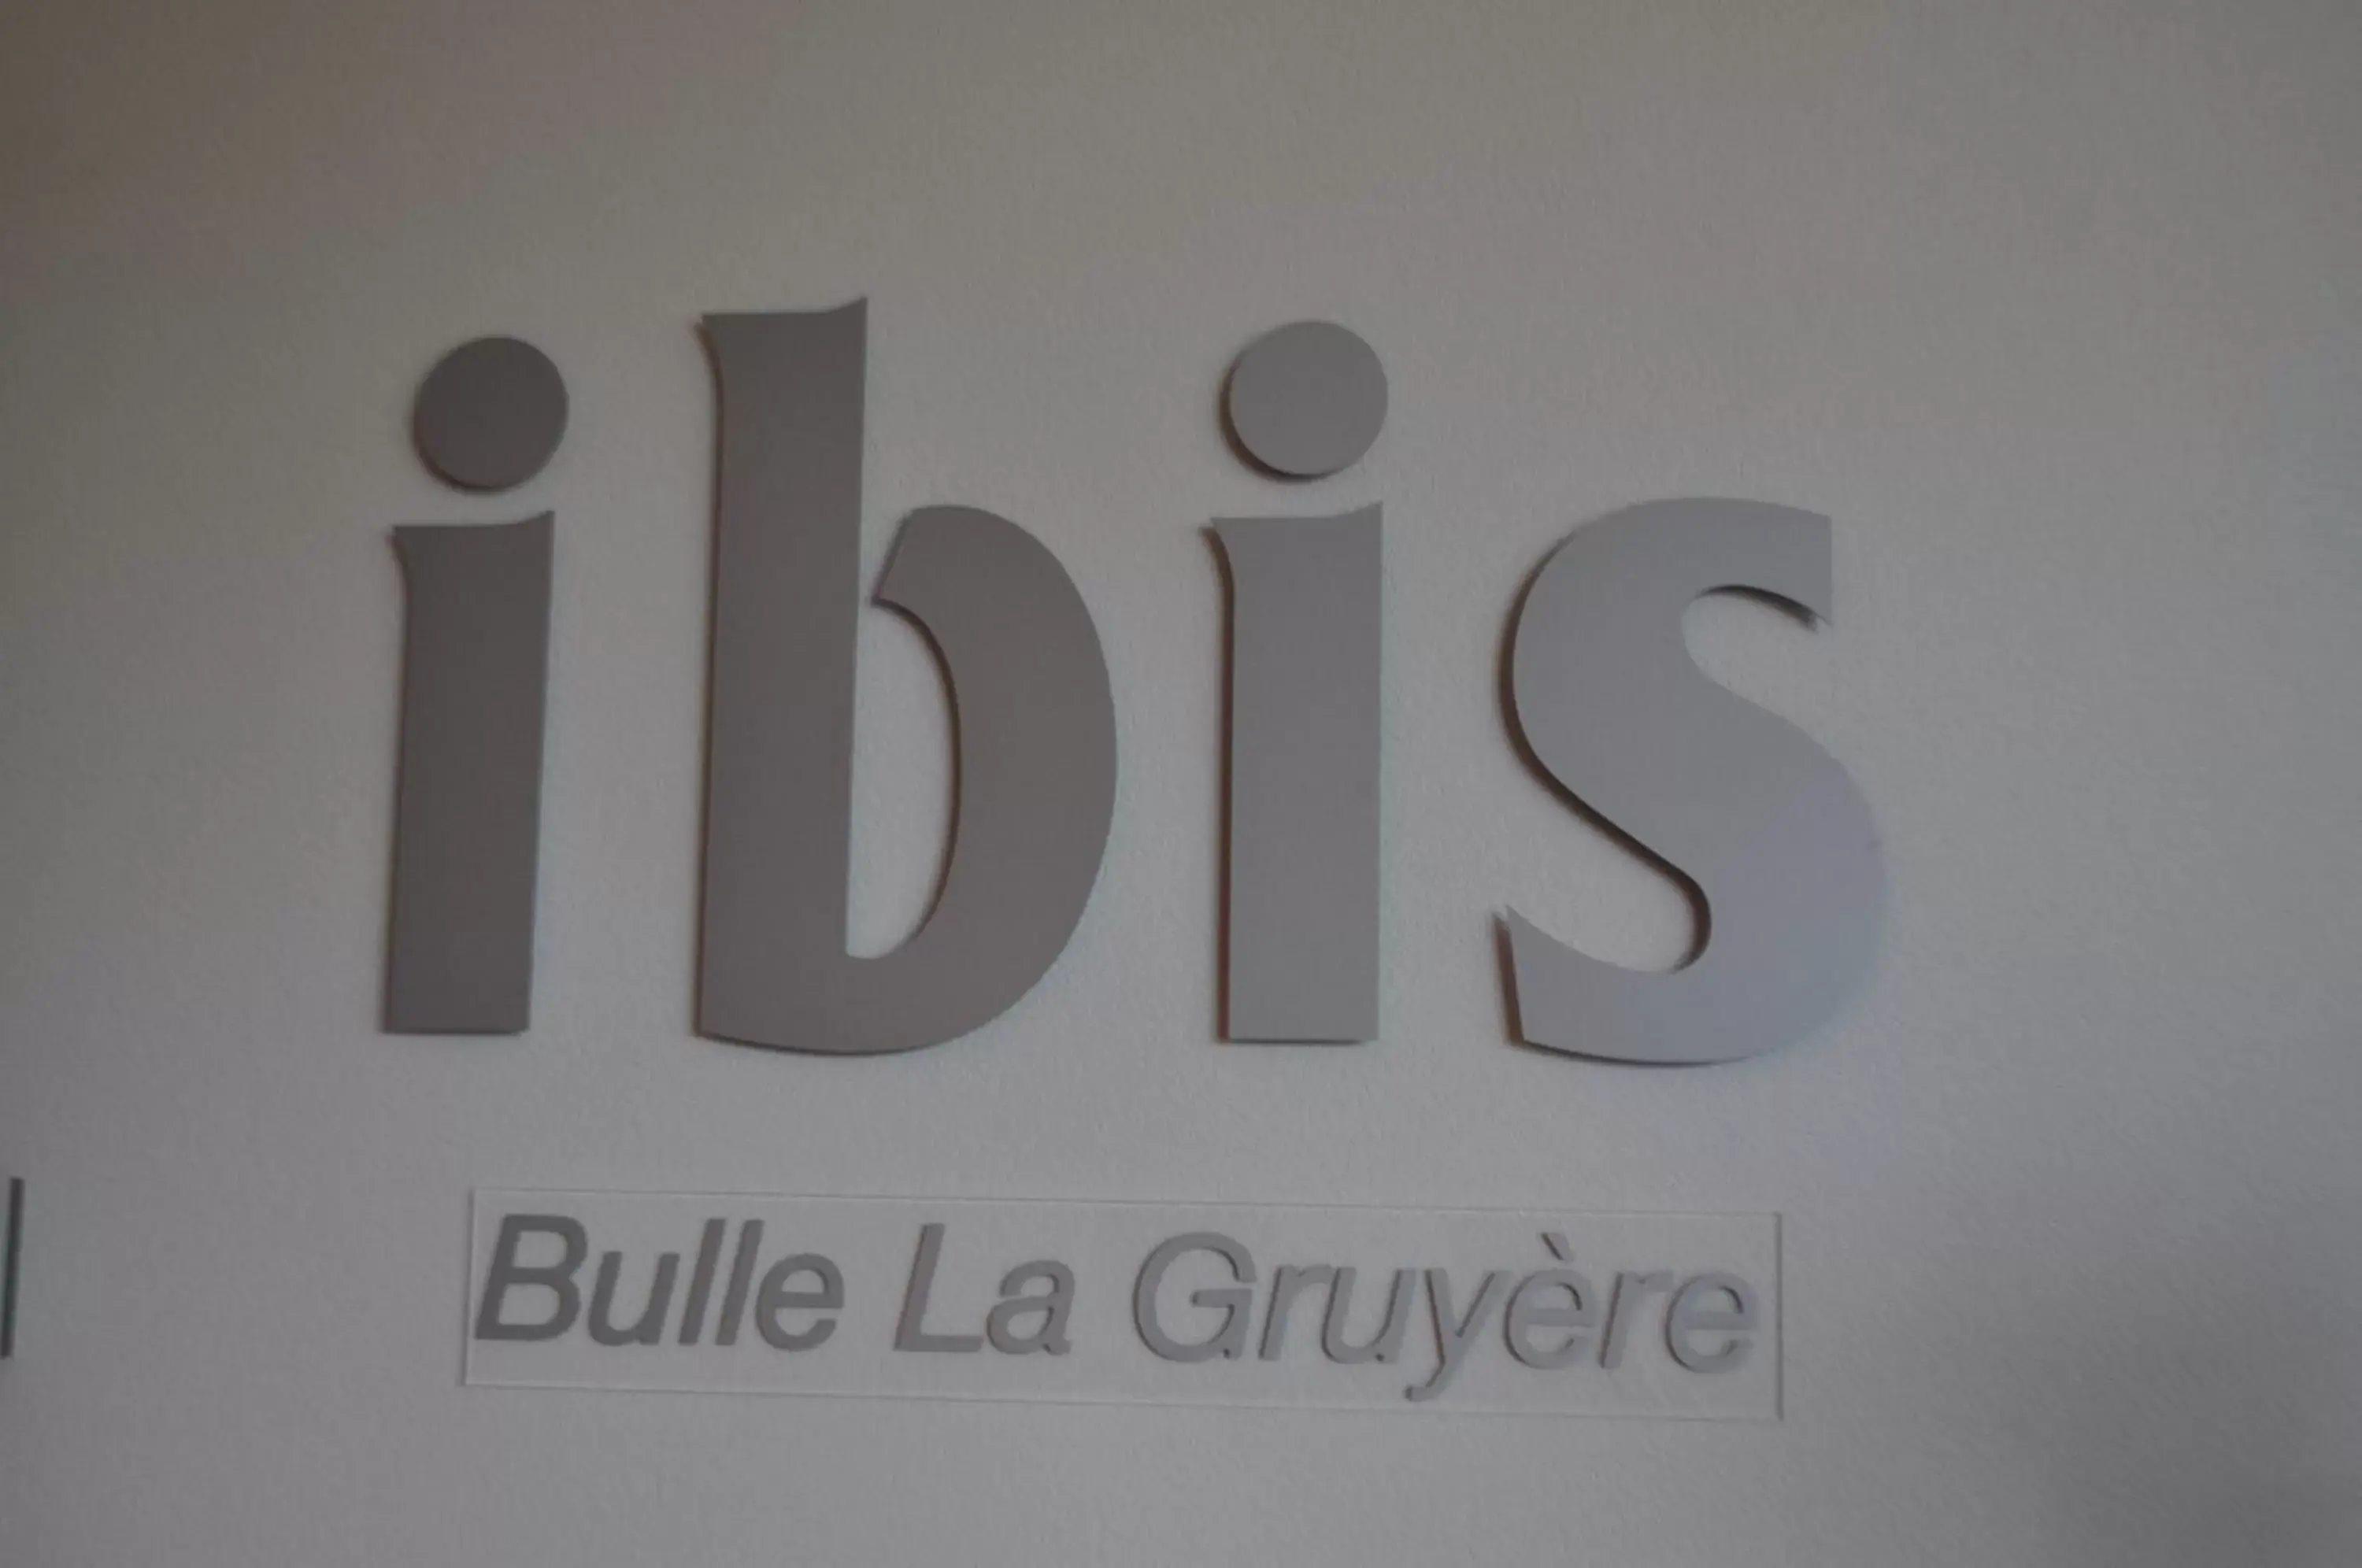 Other in ibis Bulle - La Gruyère